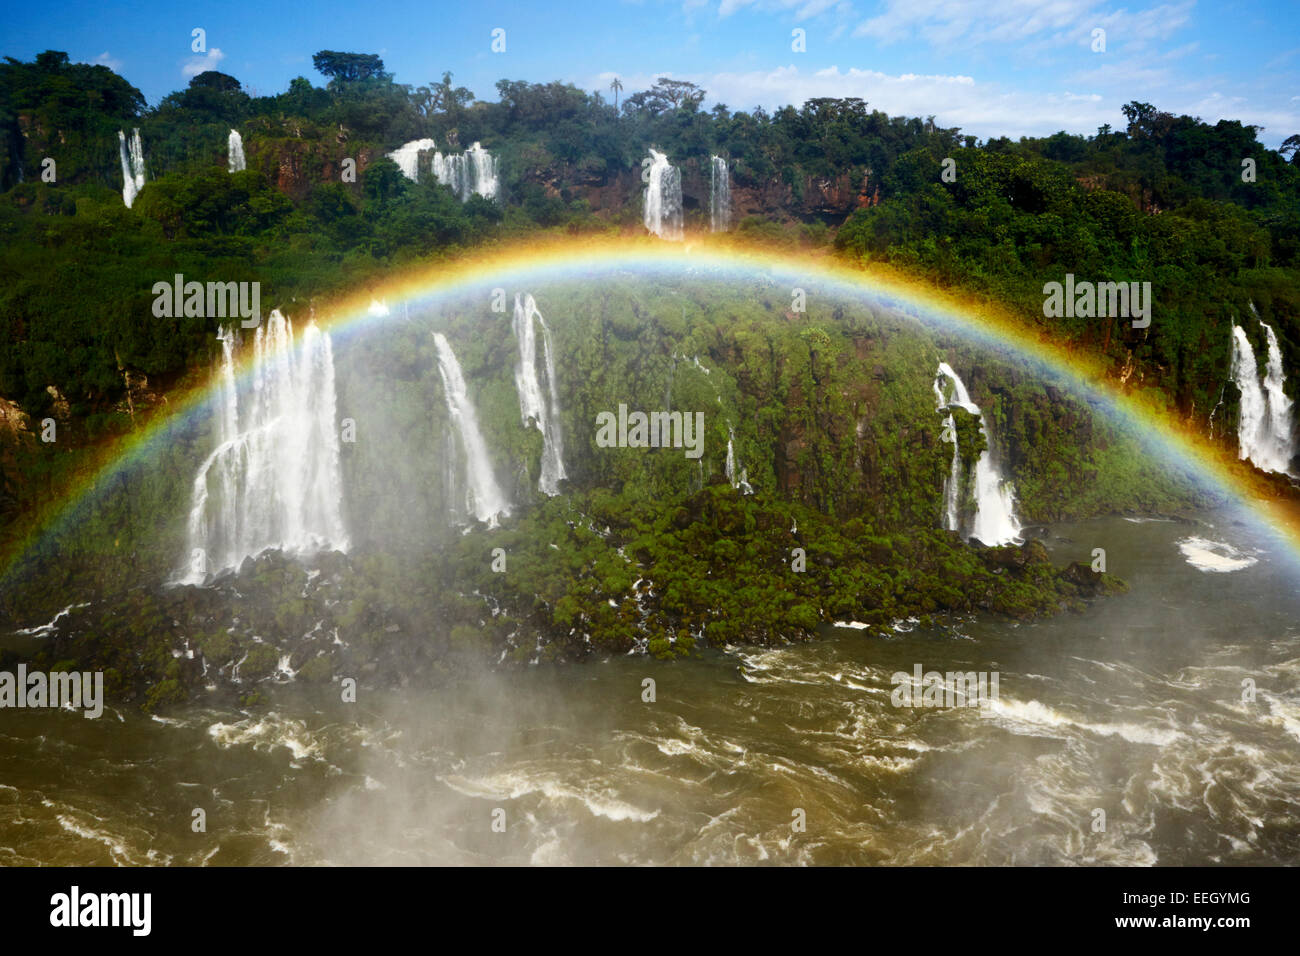 Voller Regenbogen über dem Dschungel und Fluss Iguacu Falls National Park parana Brasilien Iguazu Falls die Grenze zwischen Brasilien und Argentinien. Stockfoto